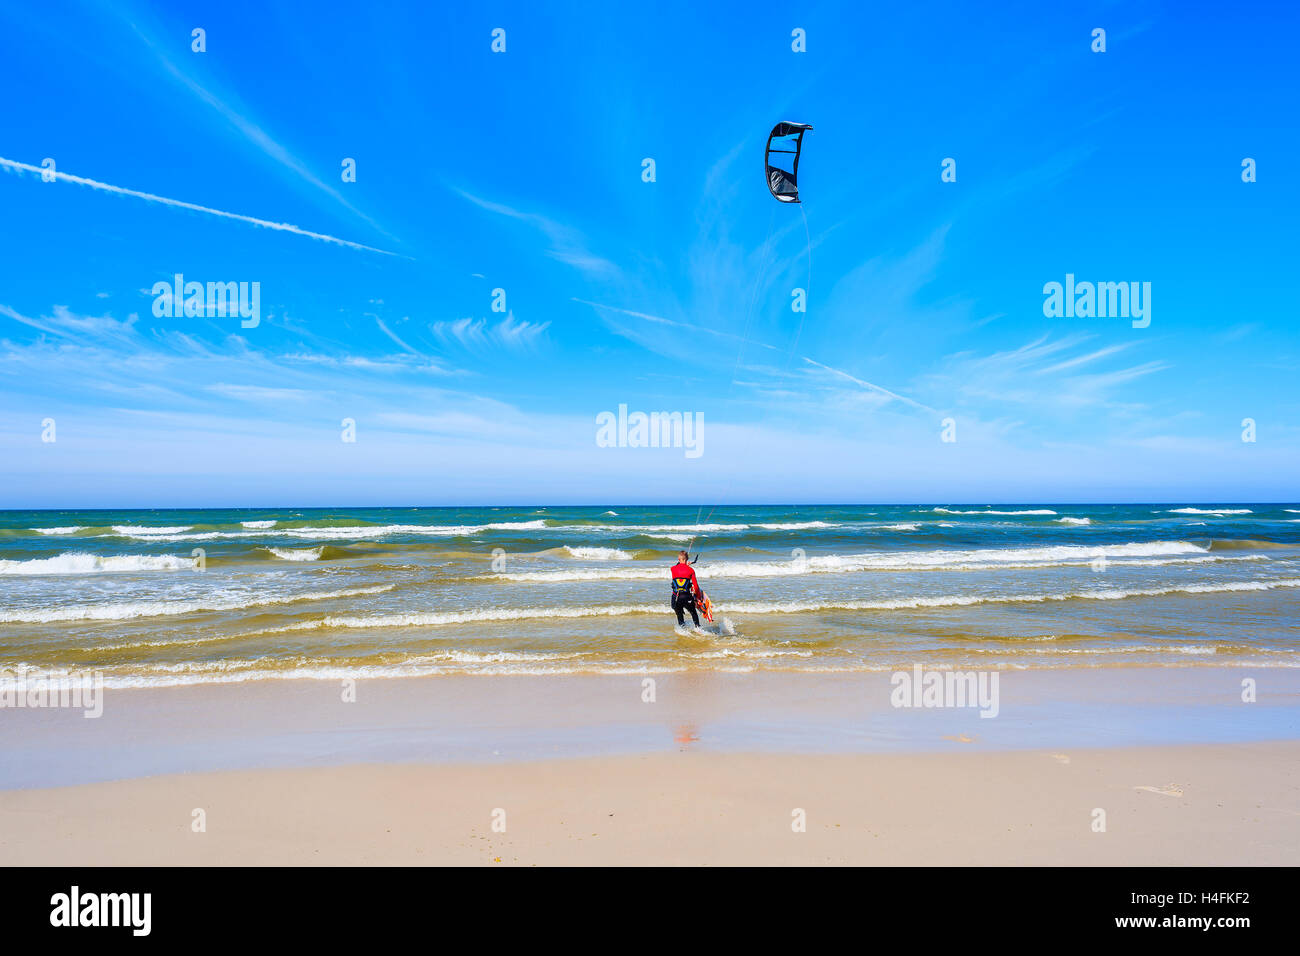 Kitesurfer vela sul blu del mare con onde in Bialogora villaggio costiero, Mar Baltico, Polonia Foto Stock